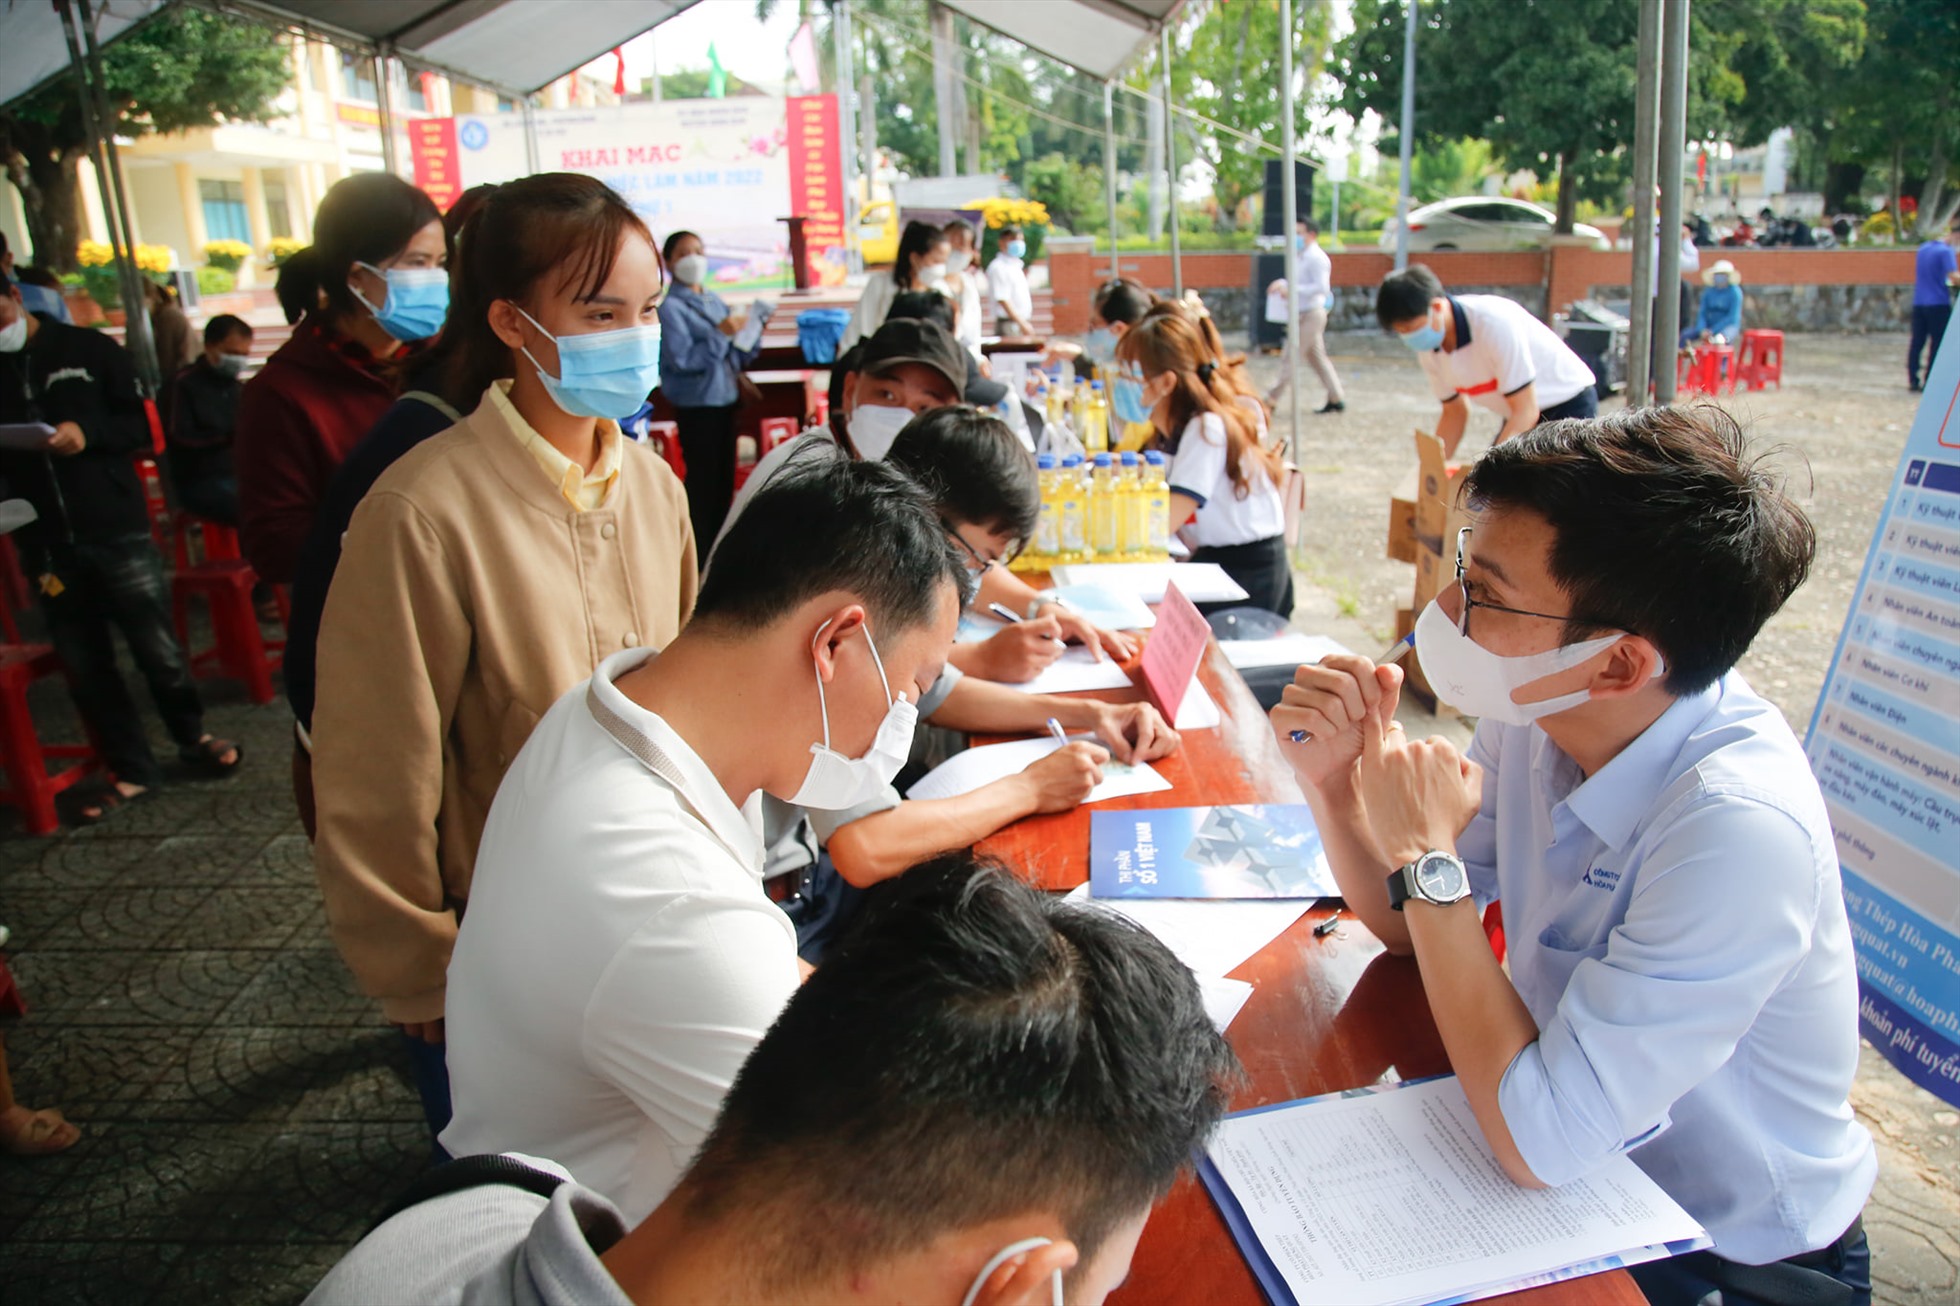 Thị trường việc làm tỉnh Quảng Ngãi là môi trường phát triển tốt cho người lao động trong lĩnh vực công nghiệp và du lịch 